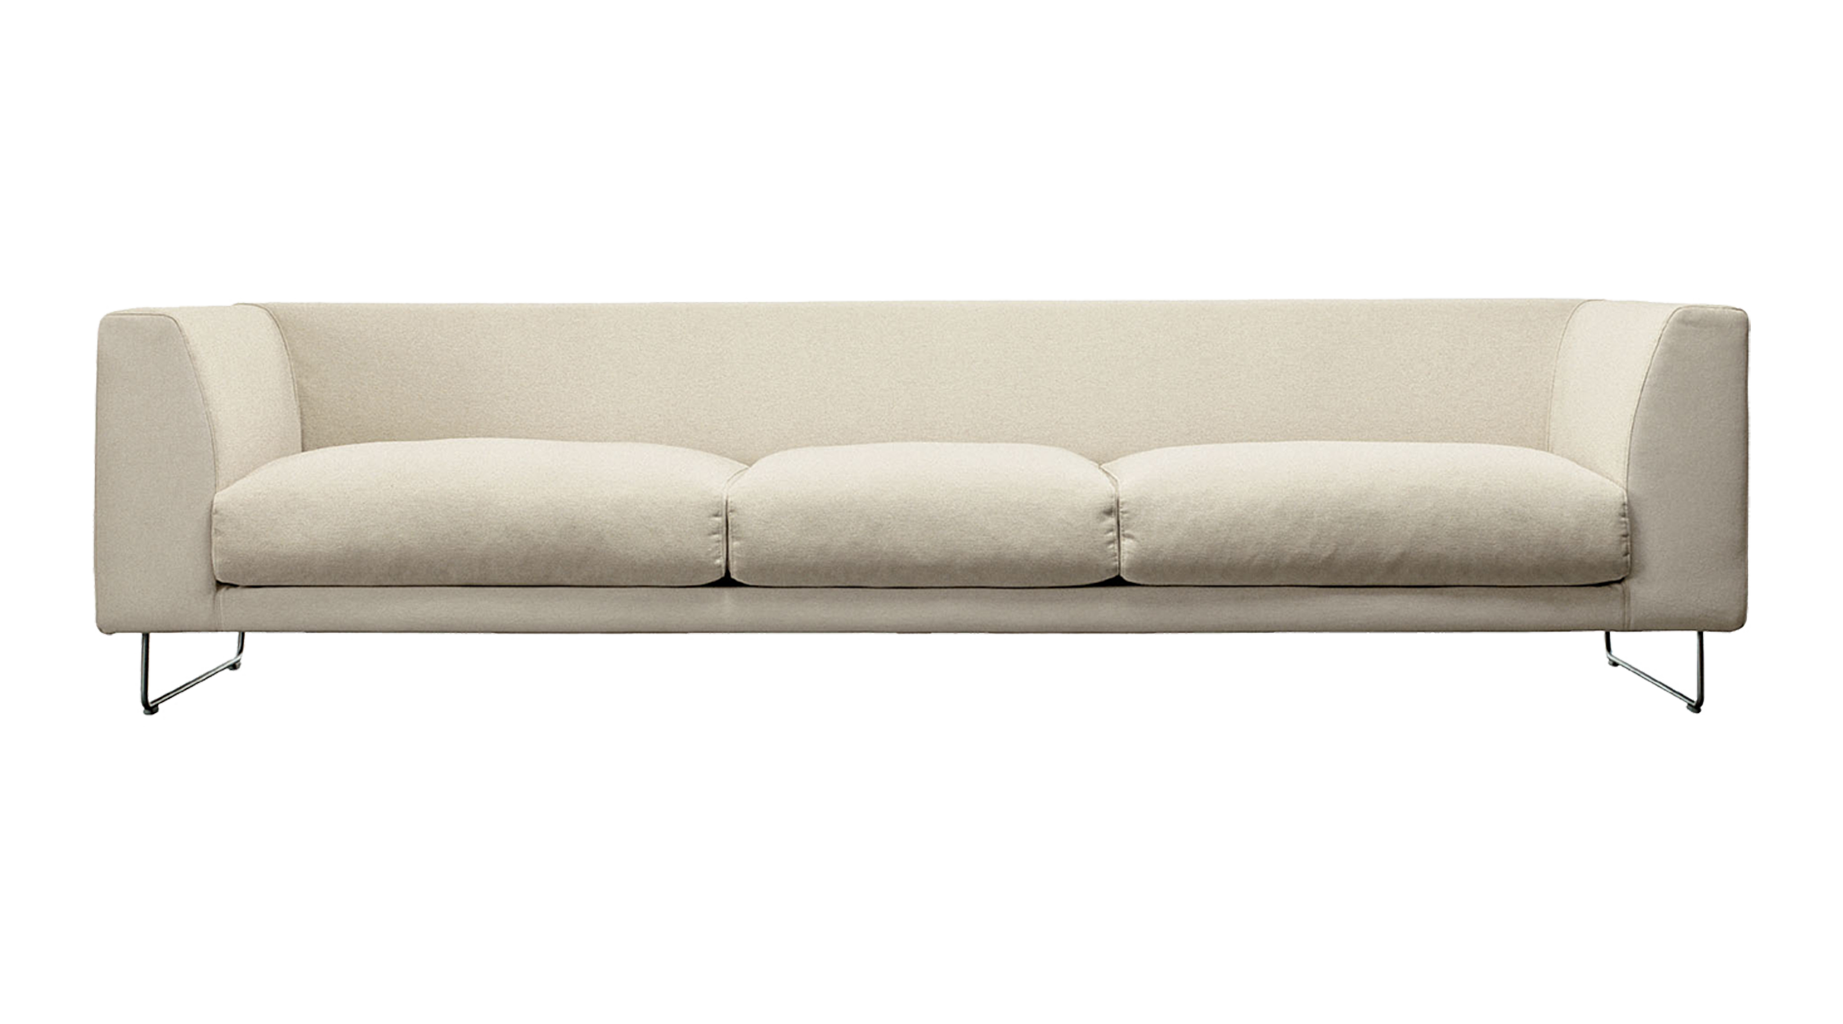 Sofa chaise longue PNG Gambar berkualitas tinggi